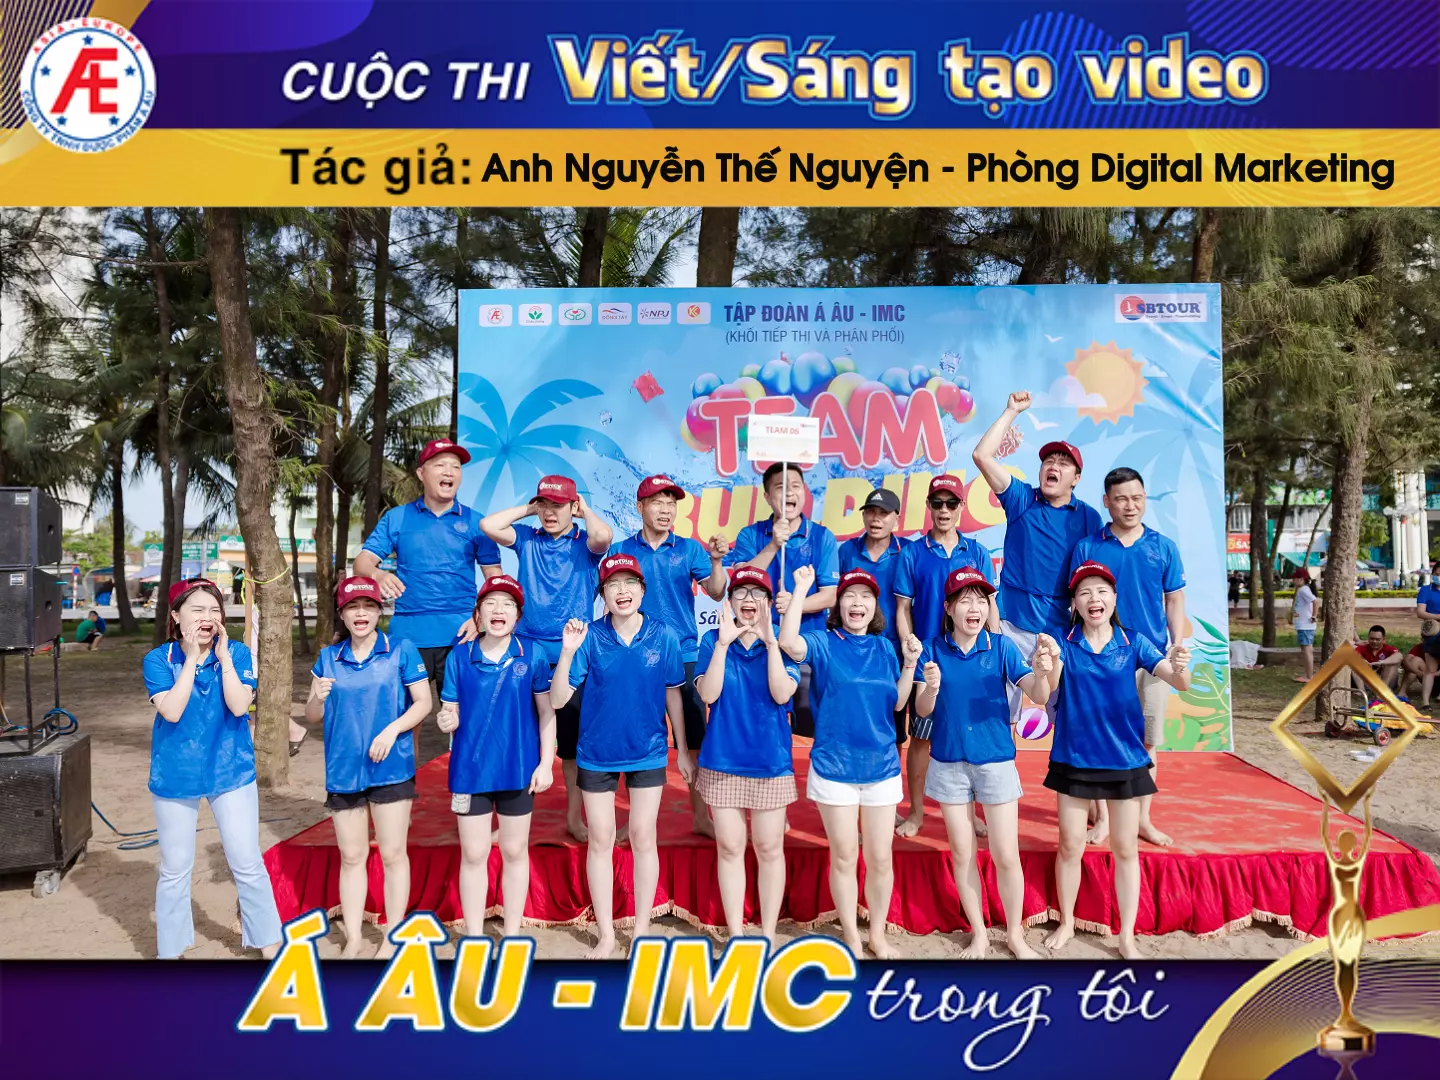 Tập Đoàn Á Âu - IMC với kỳ nghỉ mát tại Sầm Sơn thật ý nghĩa